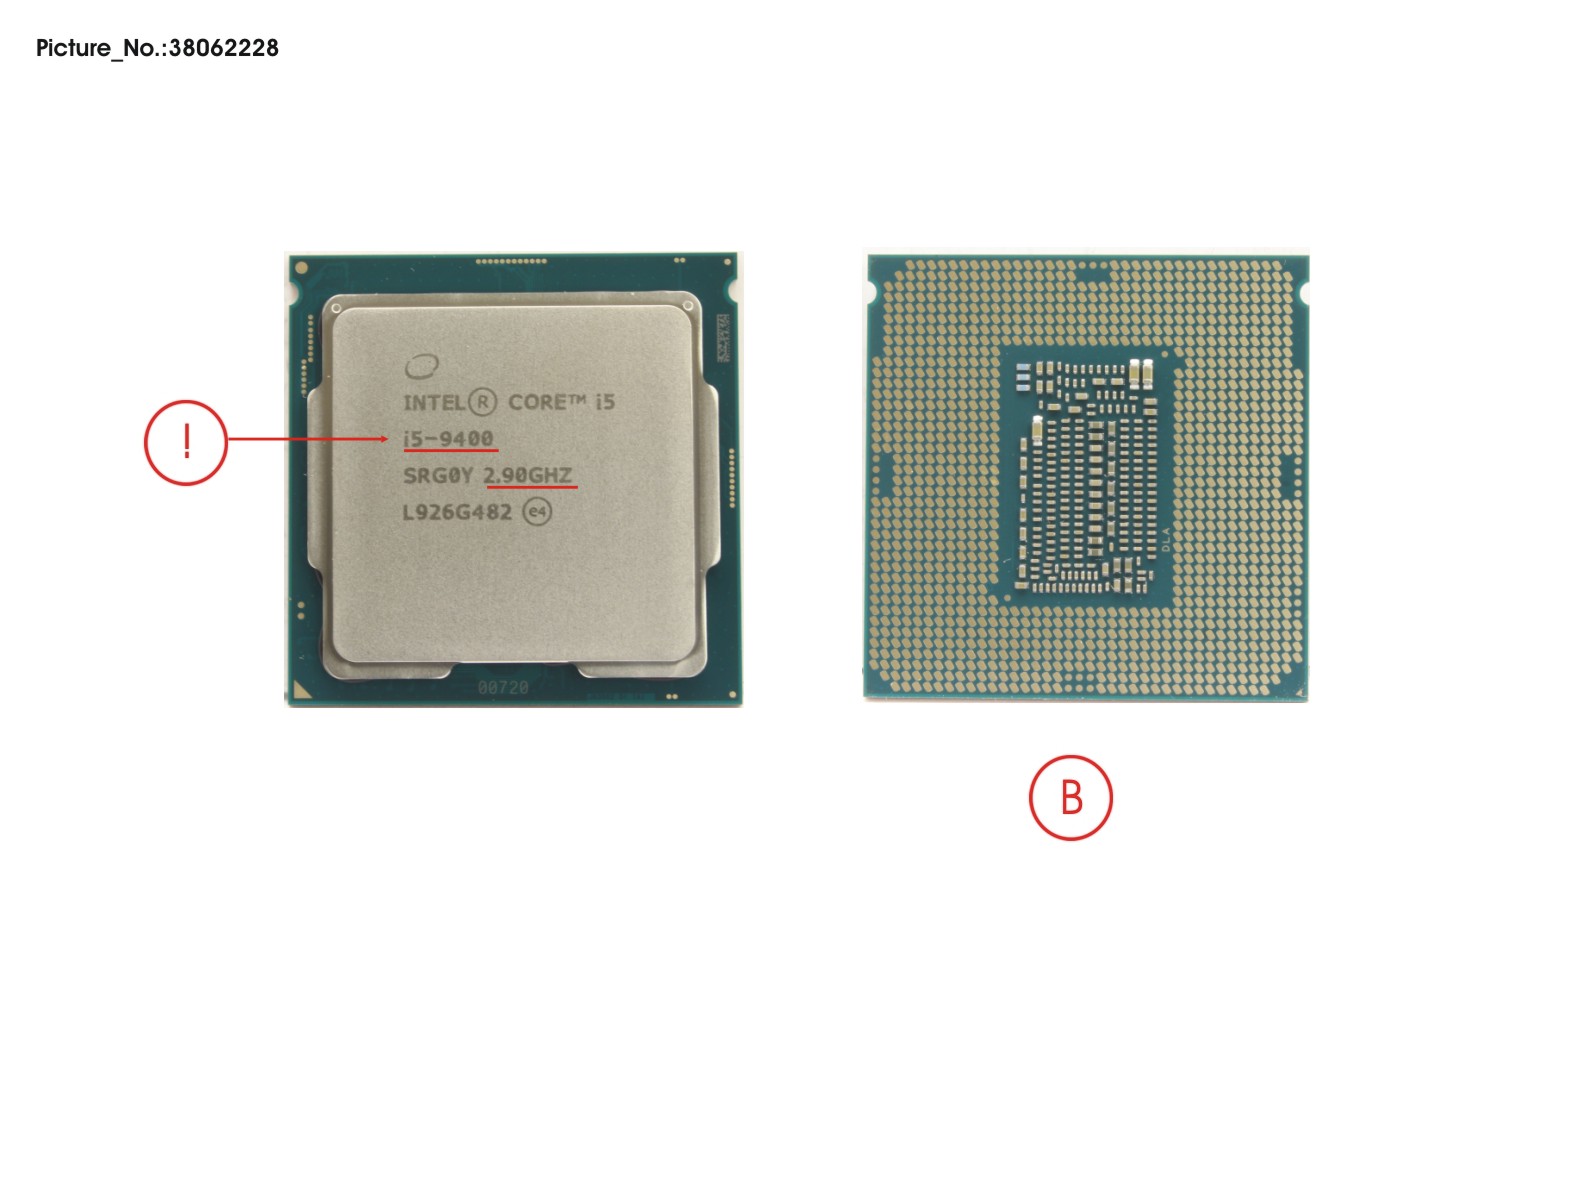 CPU CORE I5-9400 2.9GHZ 65W (R0)